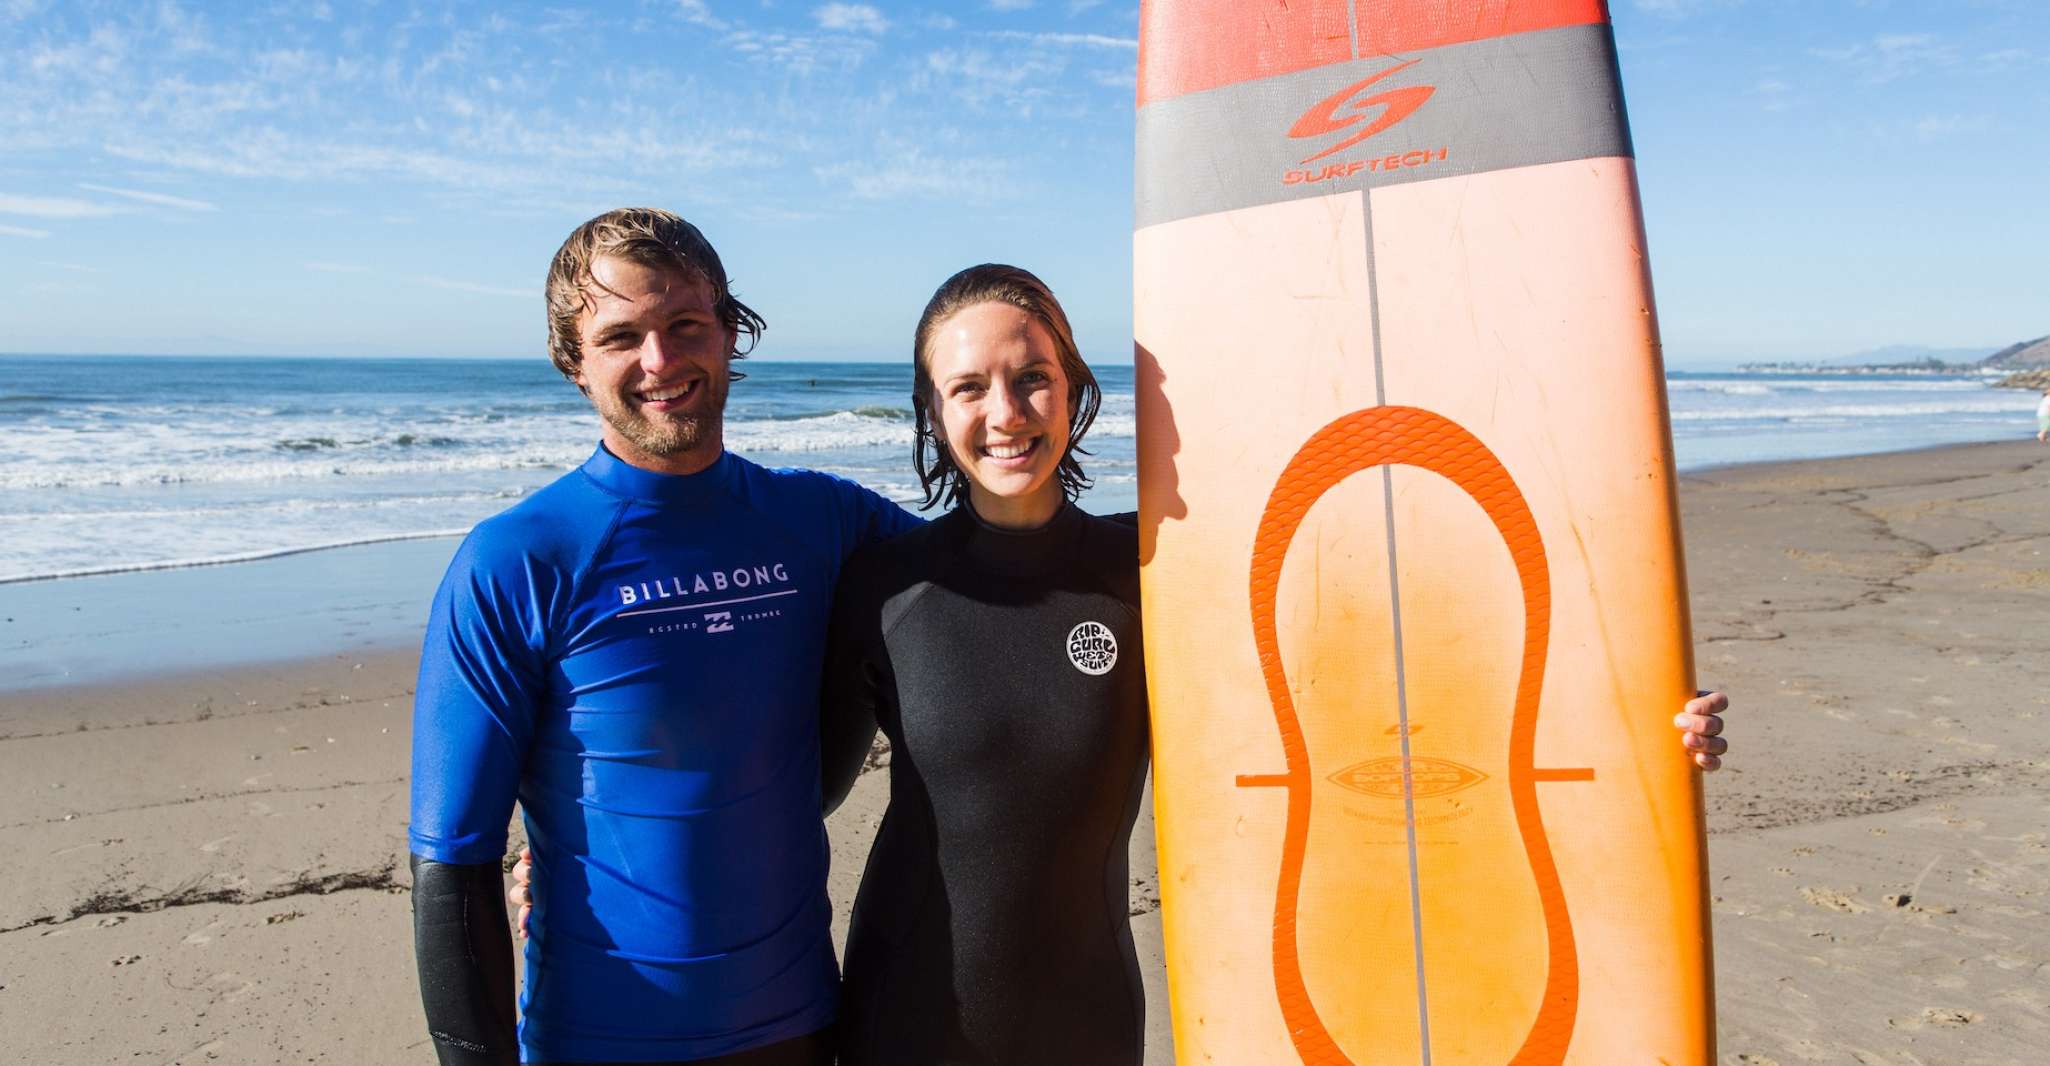 Ventura, 1.5-Hour Private Beginner's Surf Lesson - Housity